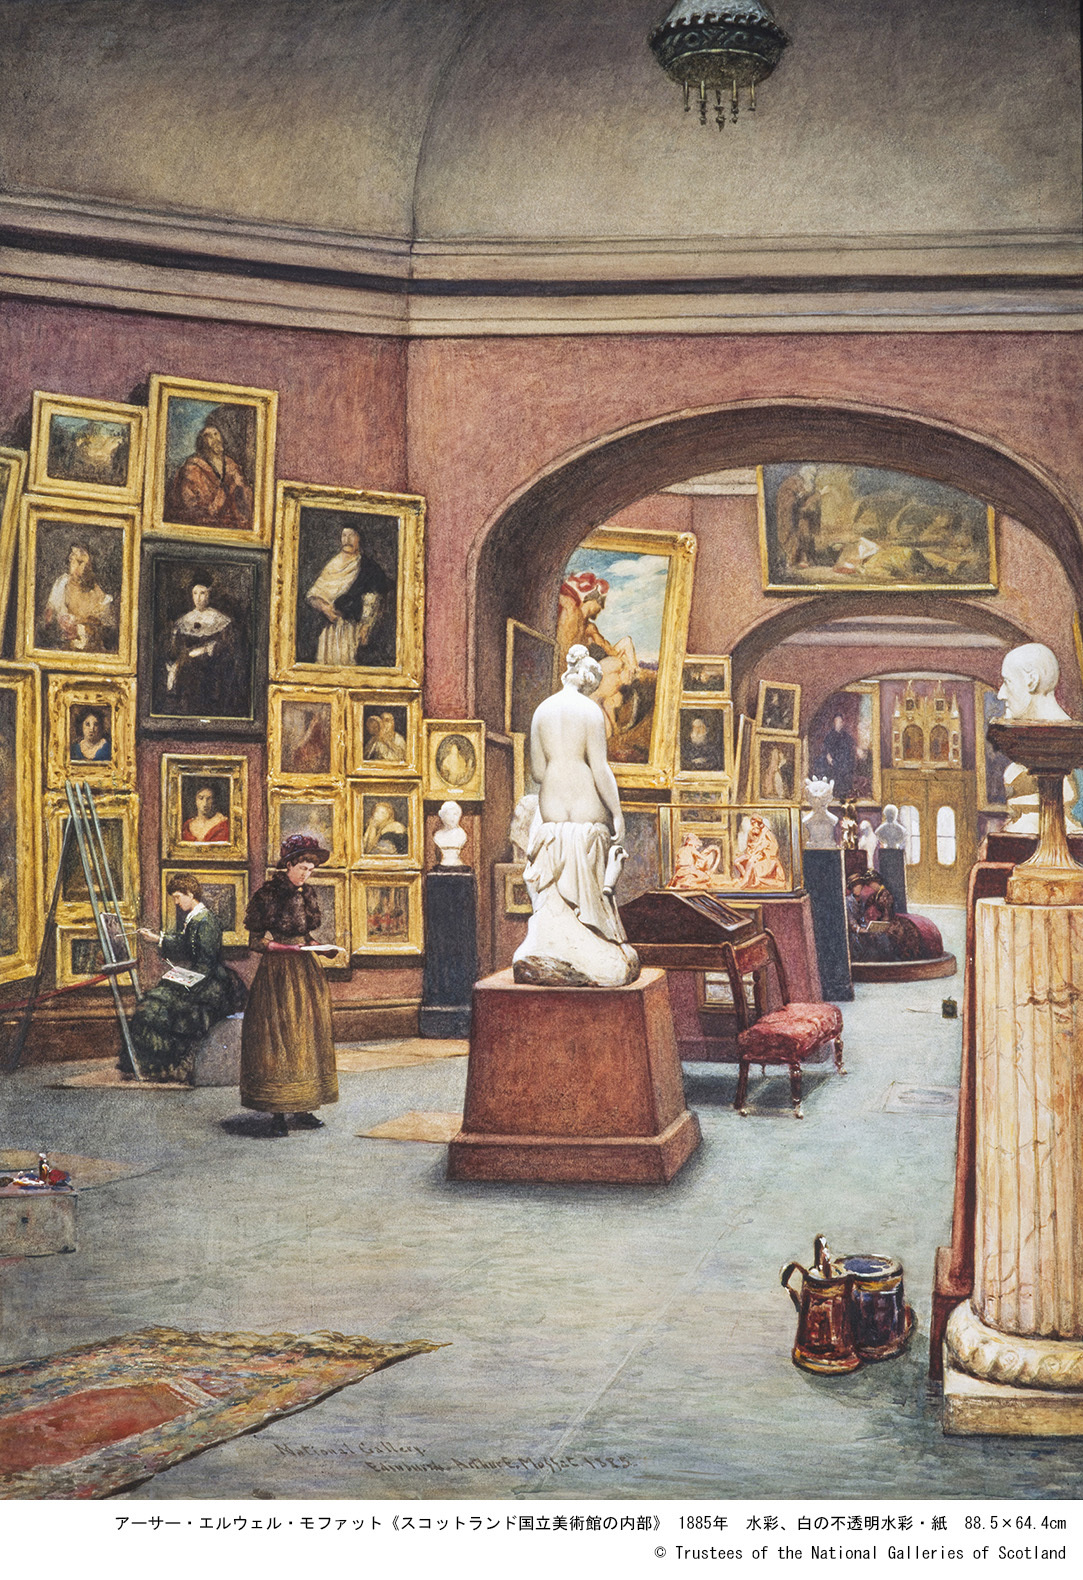 アーサー・エルウェル・モファット「スコットランド国立美術館の内部」1885年 水彩、白の不透明水彩・紙 88.5×64.4cm (c) Trustees of the National Galleries of Scotland